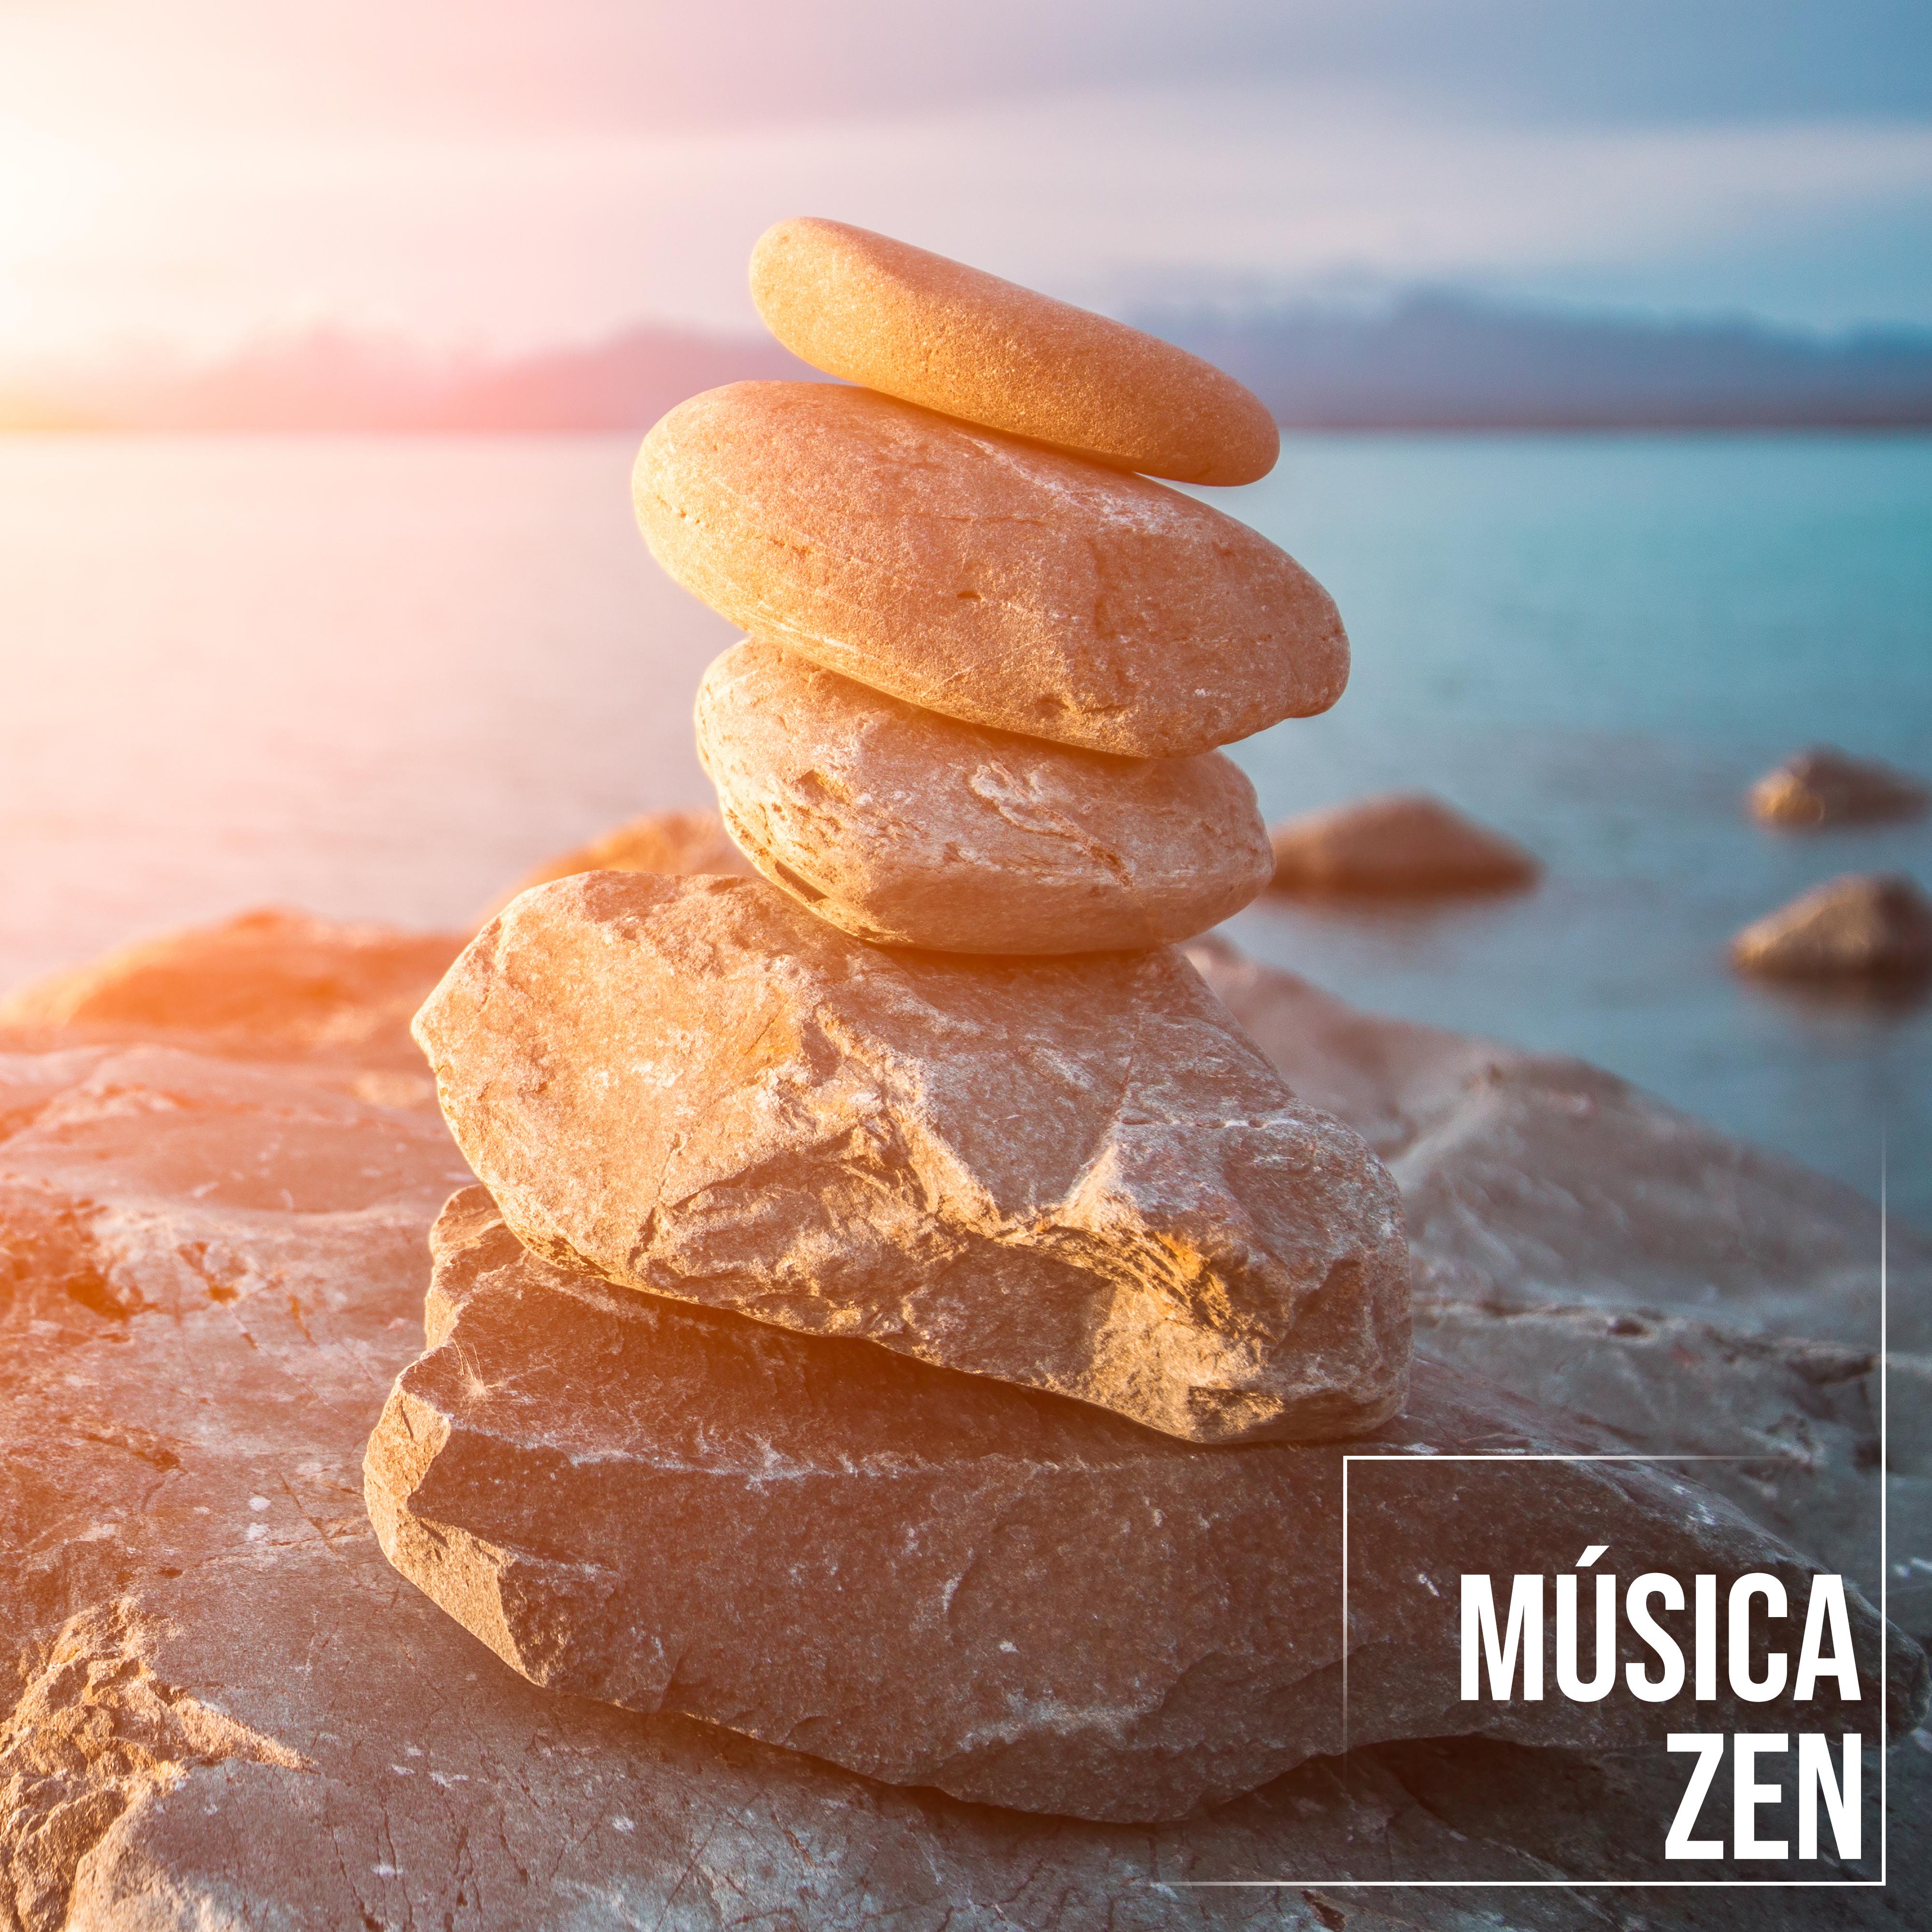 Música Zen – Meditação Profunda, Música para a Mente, Meditação Yoga, Equilíbrio Interno, Música Relaxante para Meditação, Dormir, Relaxar